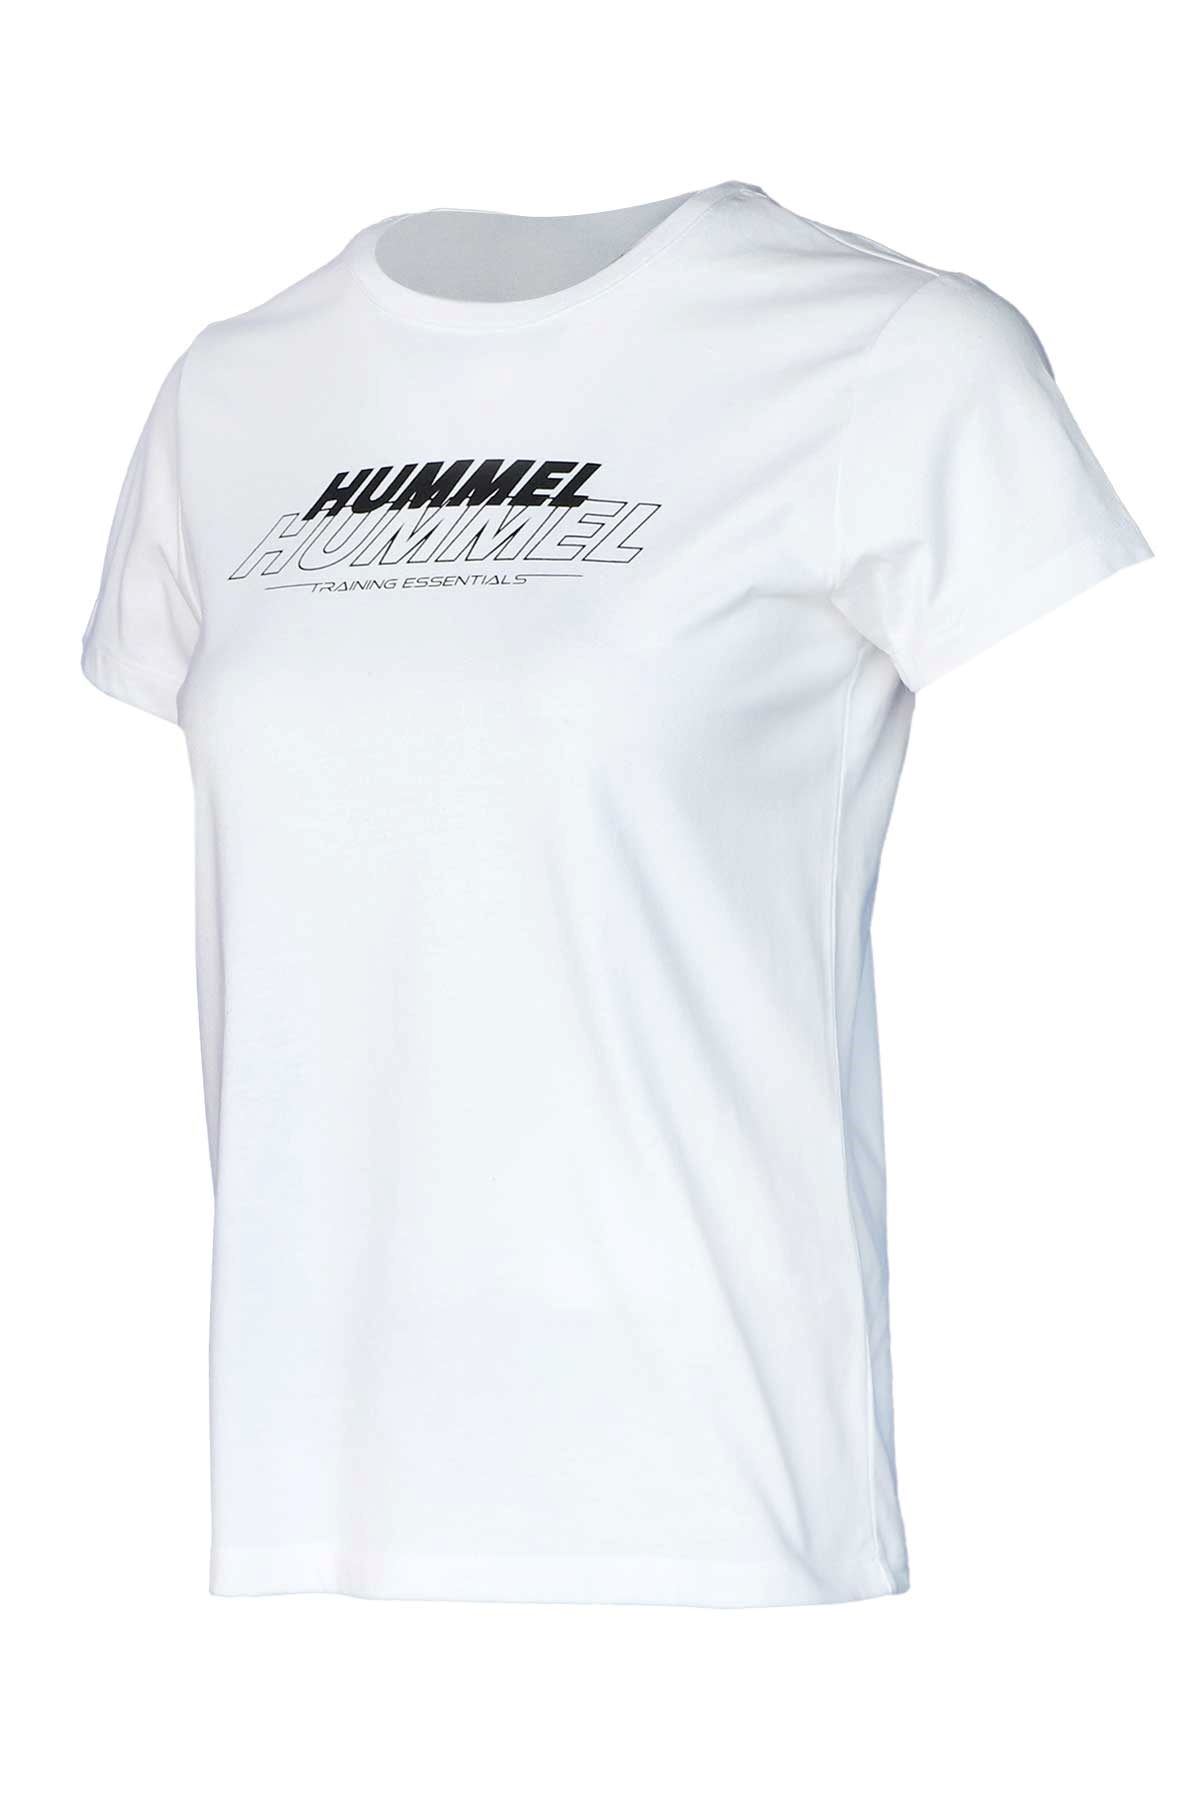 Hummel Hmlt-Te Mına Cotton T-Shırt Kadın Beyaz Tişört - 911706-9001